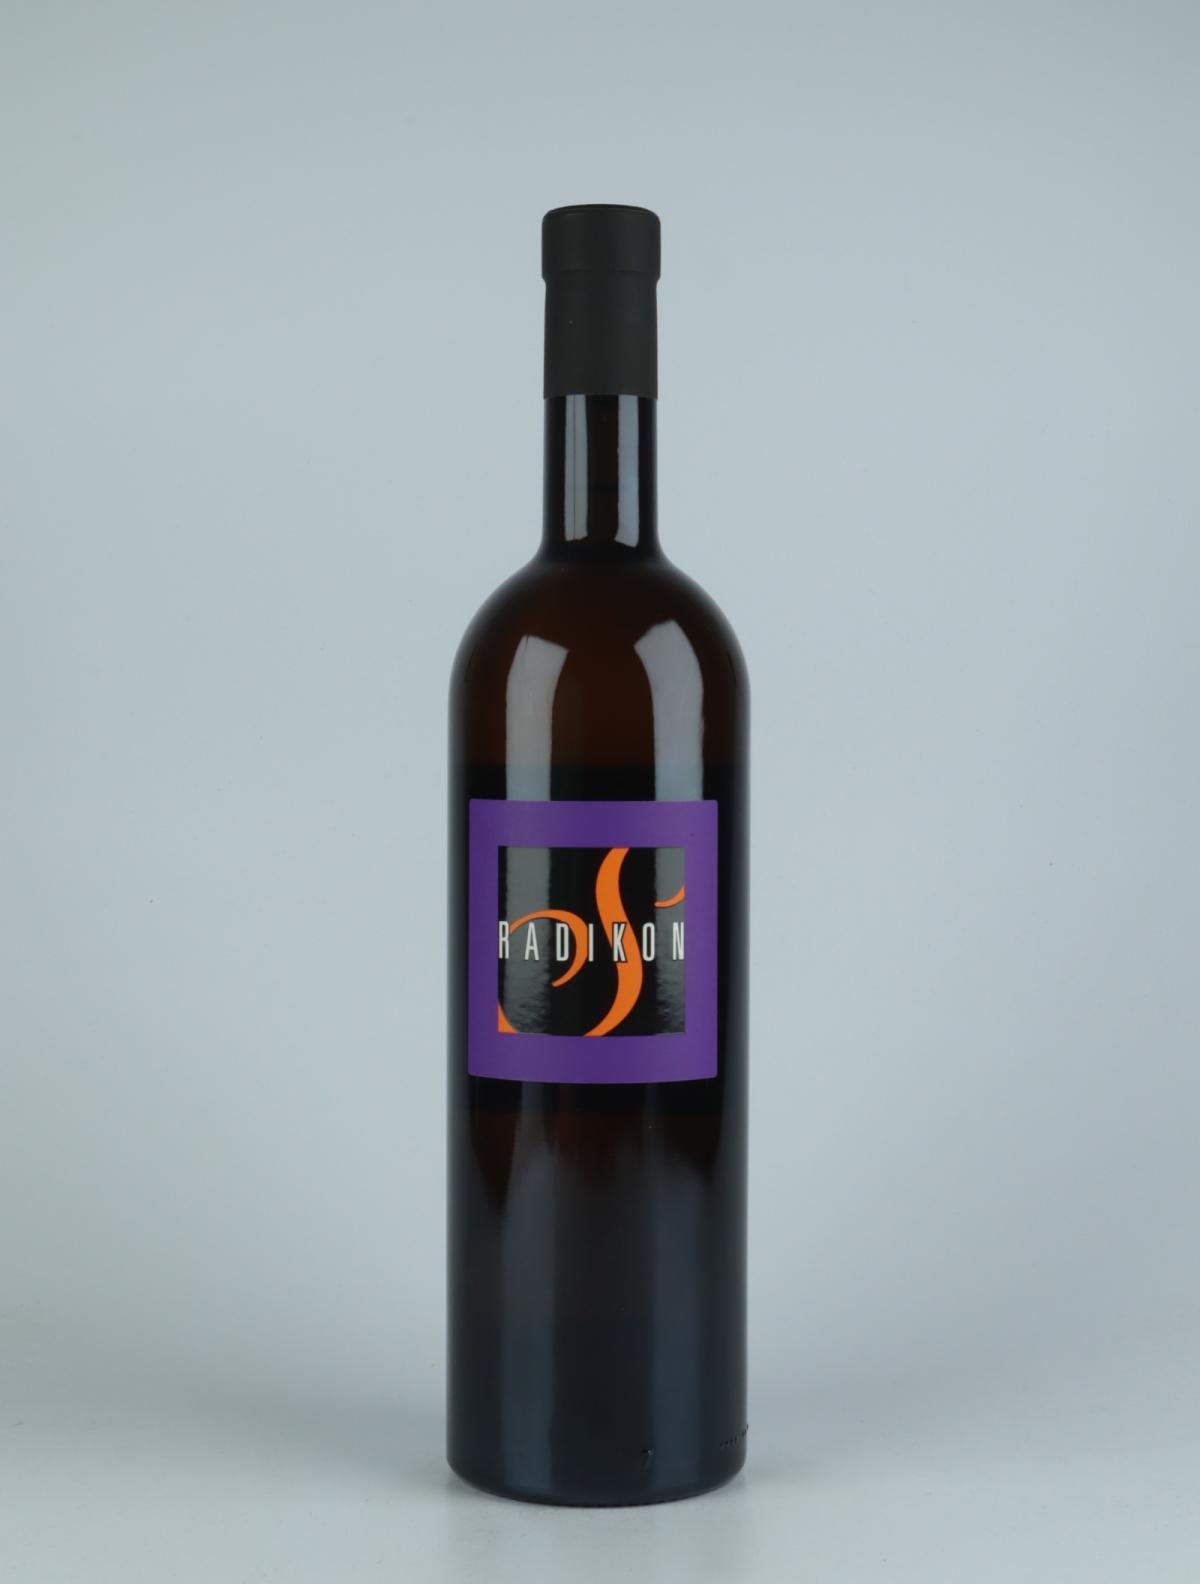 A bottle 2019 Slatnik Orange wine from Radikon, Friuli in Italy